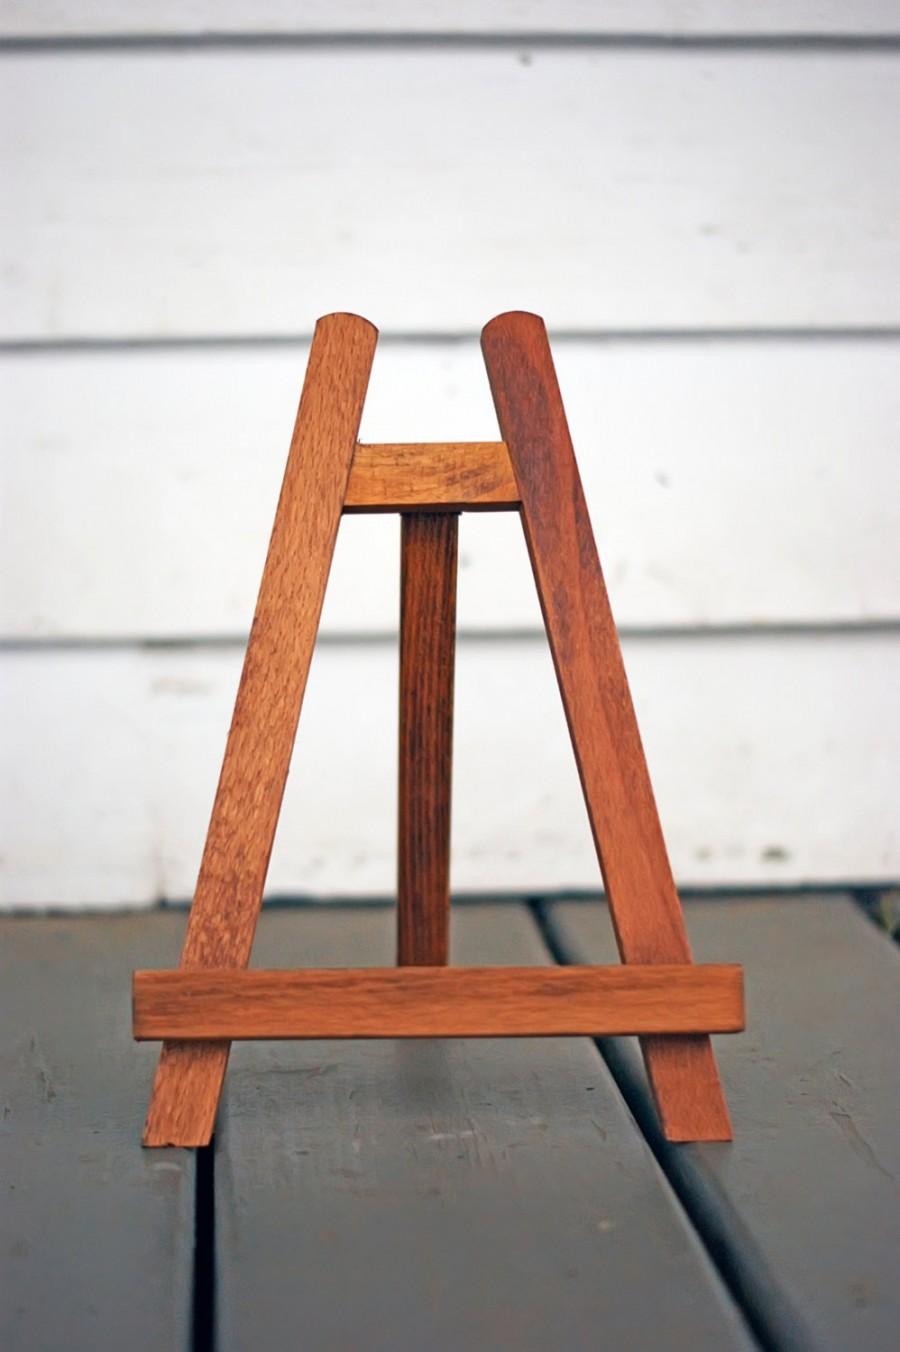 زفاف - Easel - Chalkboard Easel - Picture Easel - Wooden Easel - Wood Easel - Table Top Easel - Chalkboard Stand, Picture Stand - Wood Stand